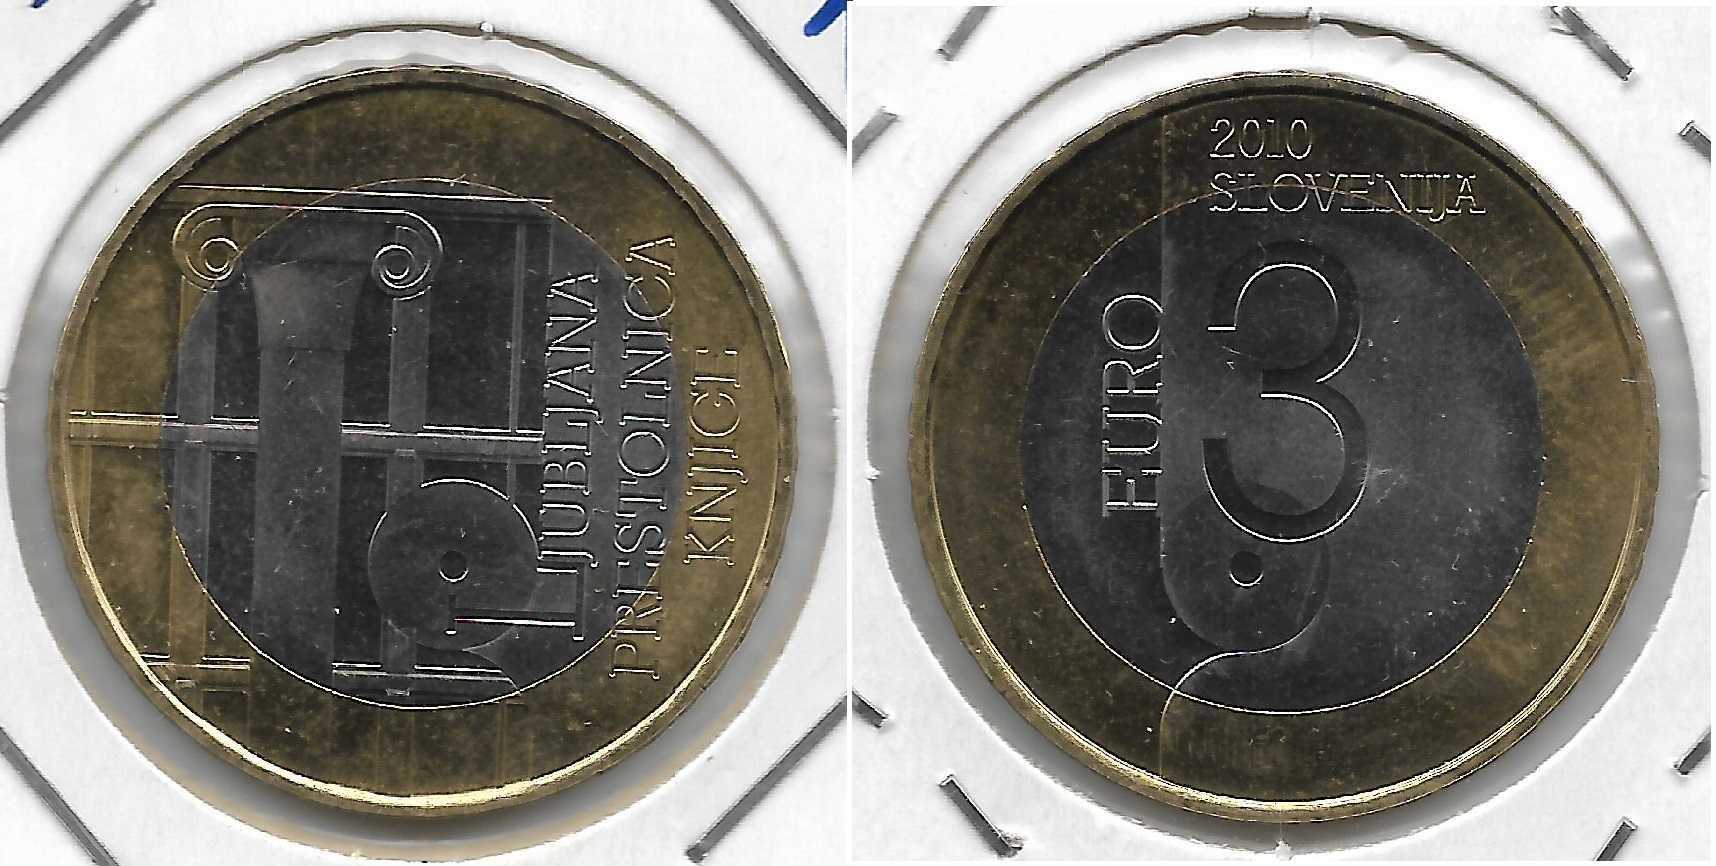 3 euros da Eslovénia. Sem circular. Anos 2008, 2009, 2010, 2011